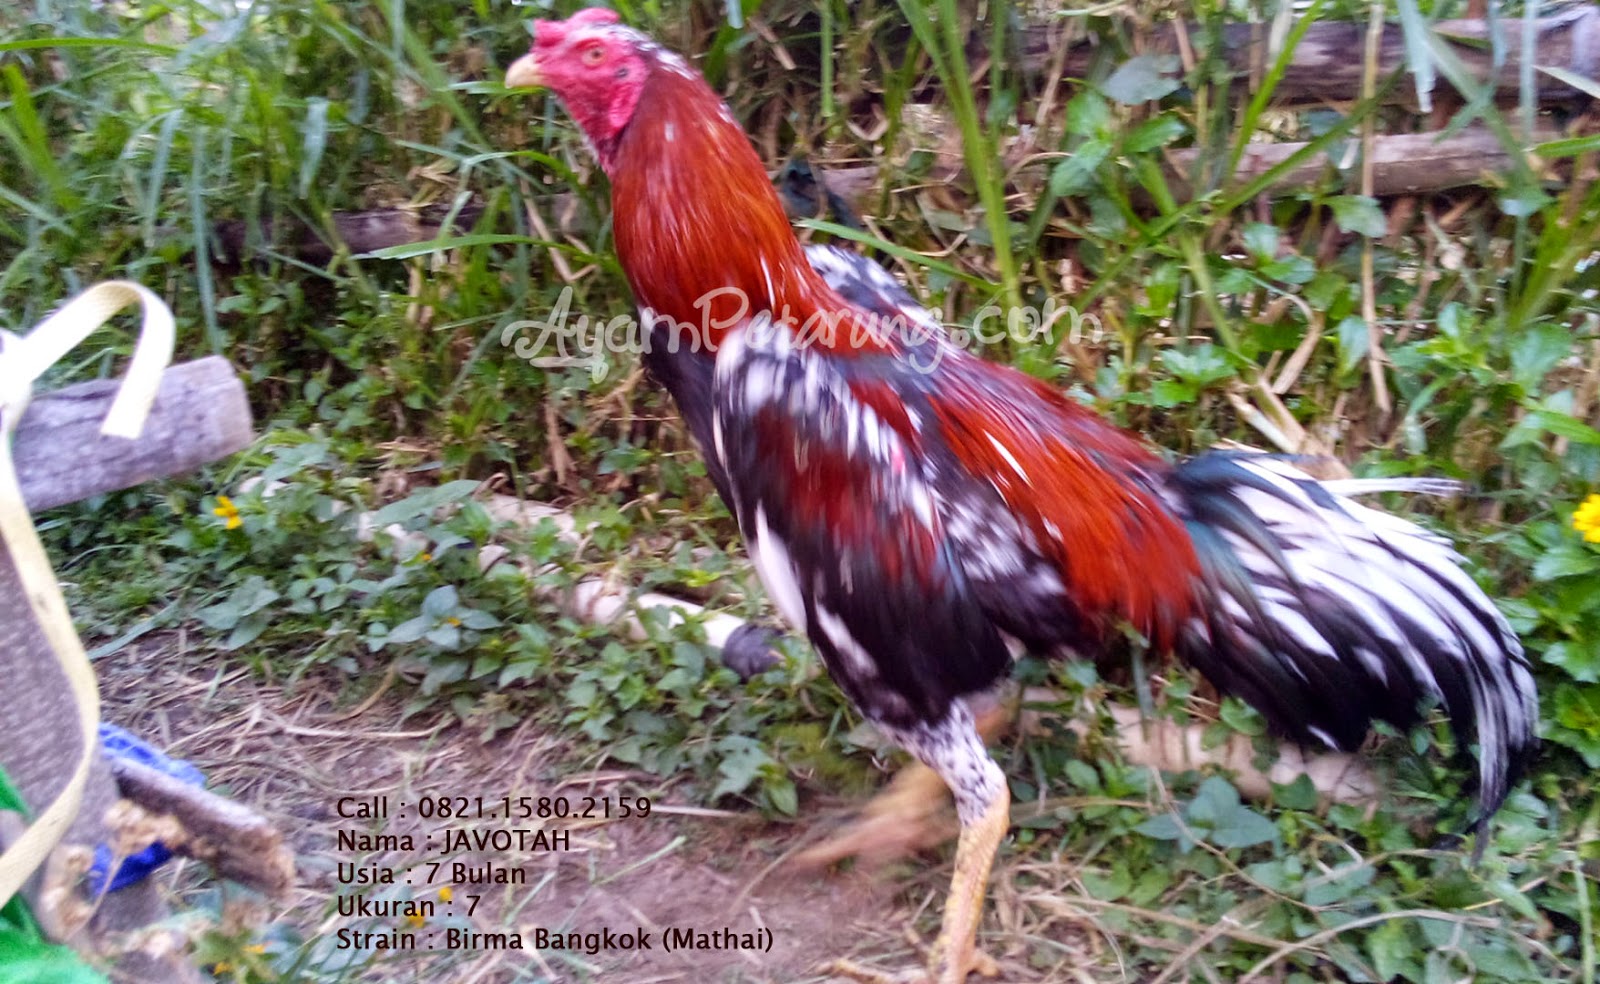  Gambar  Ayam  Aduan Birma  Gambar  FGH